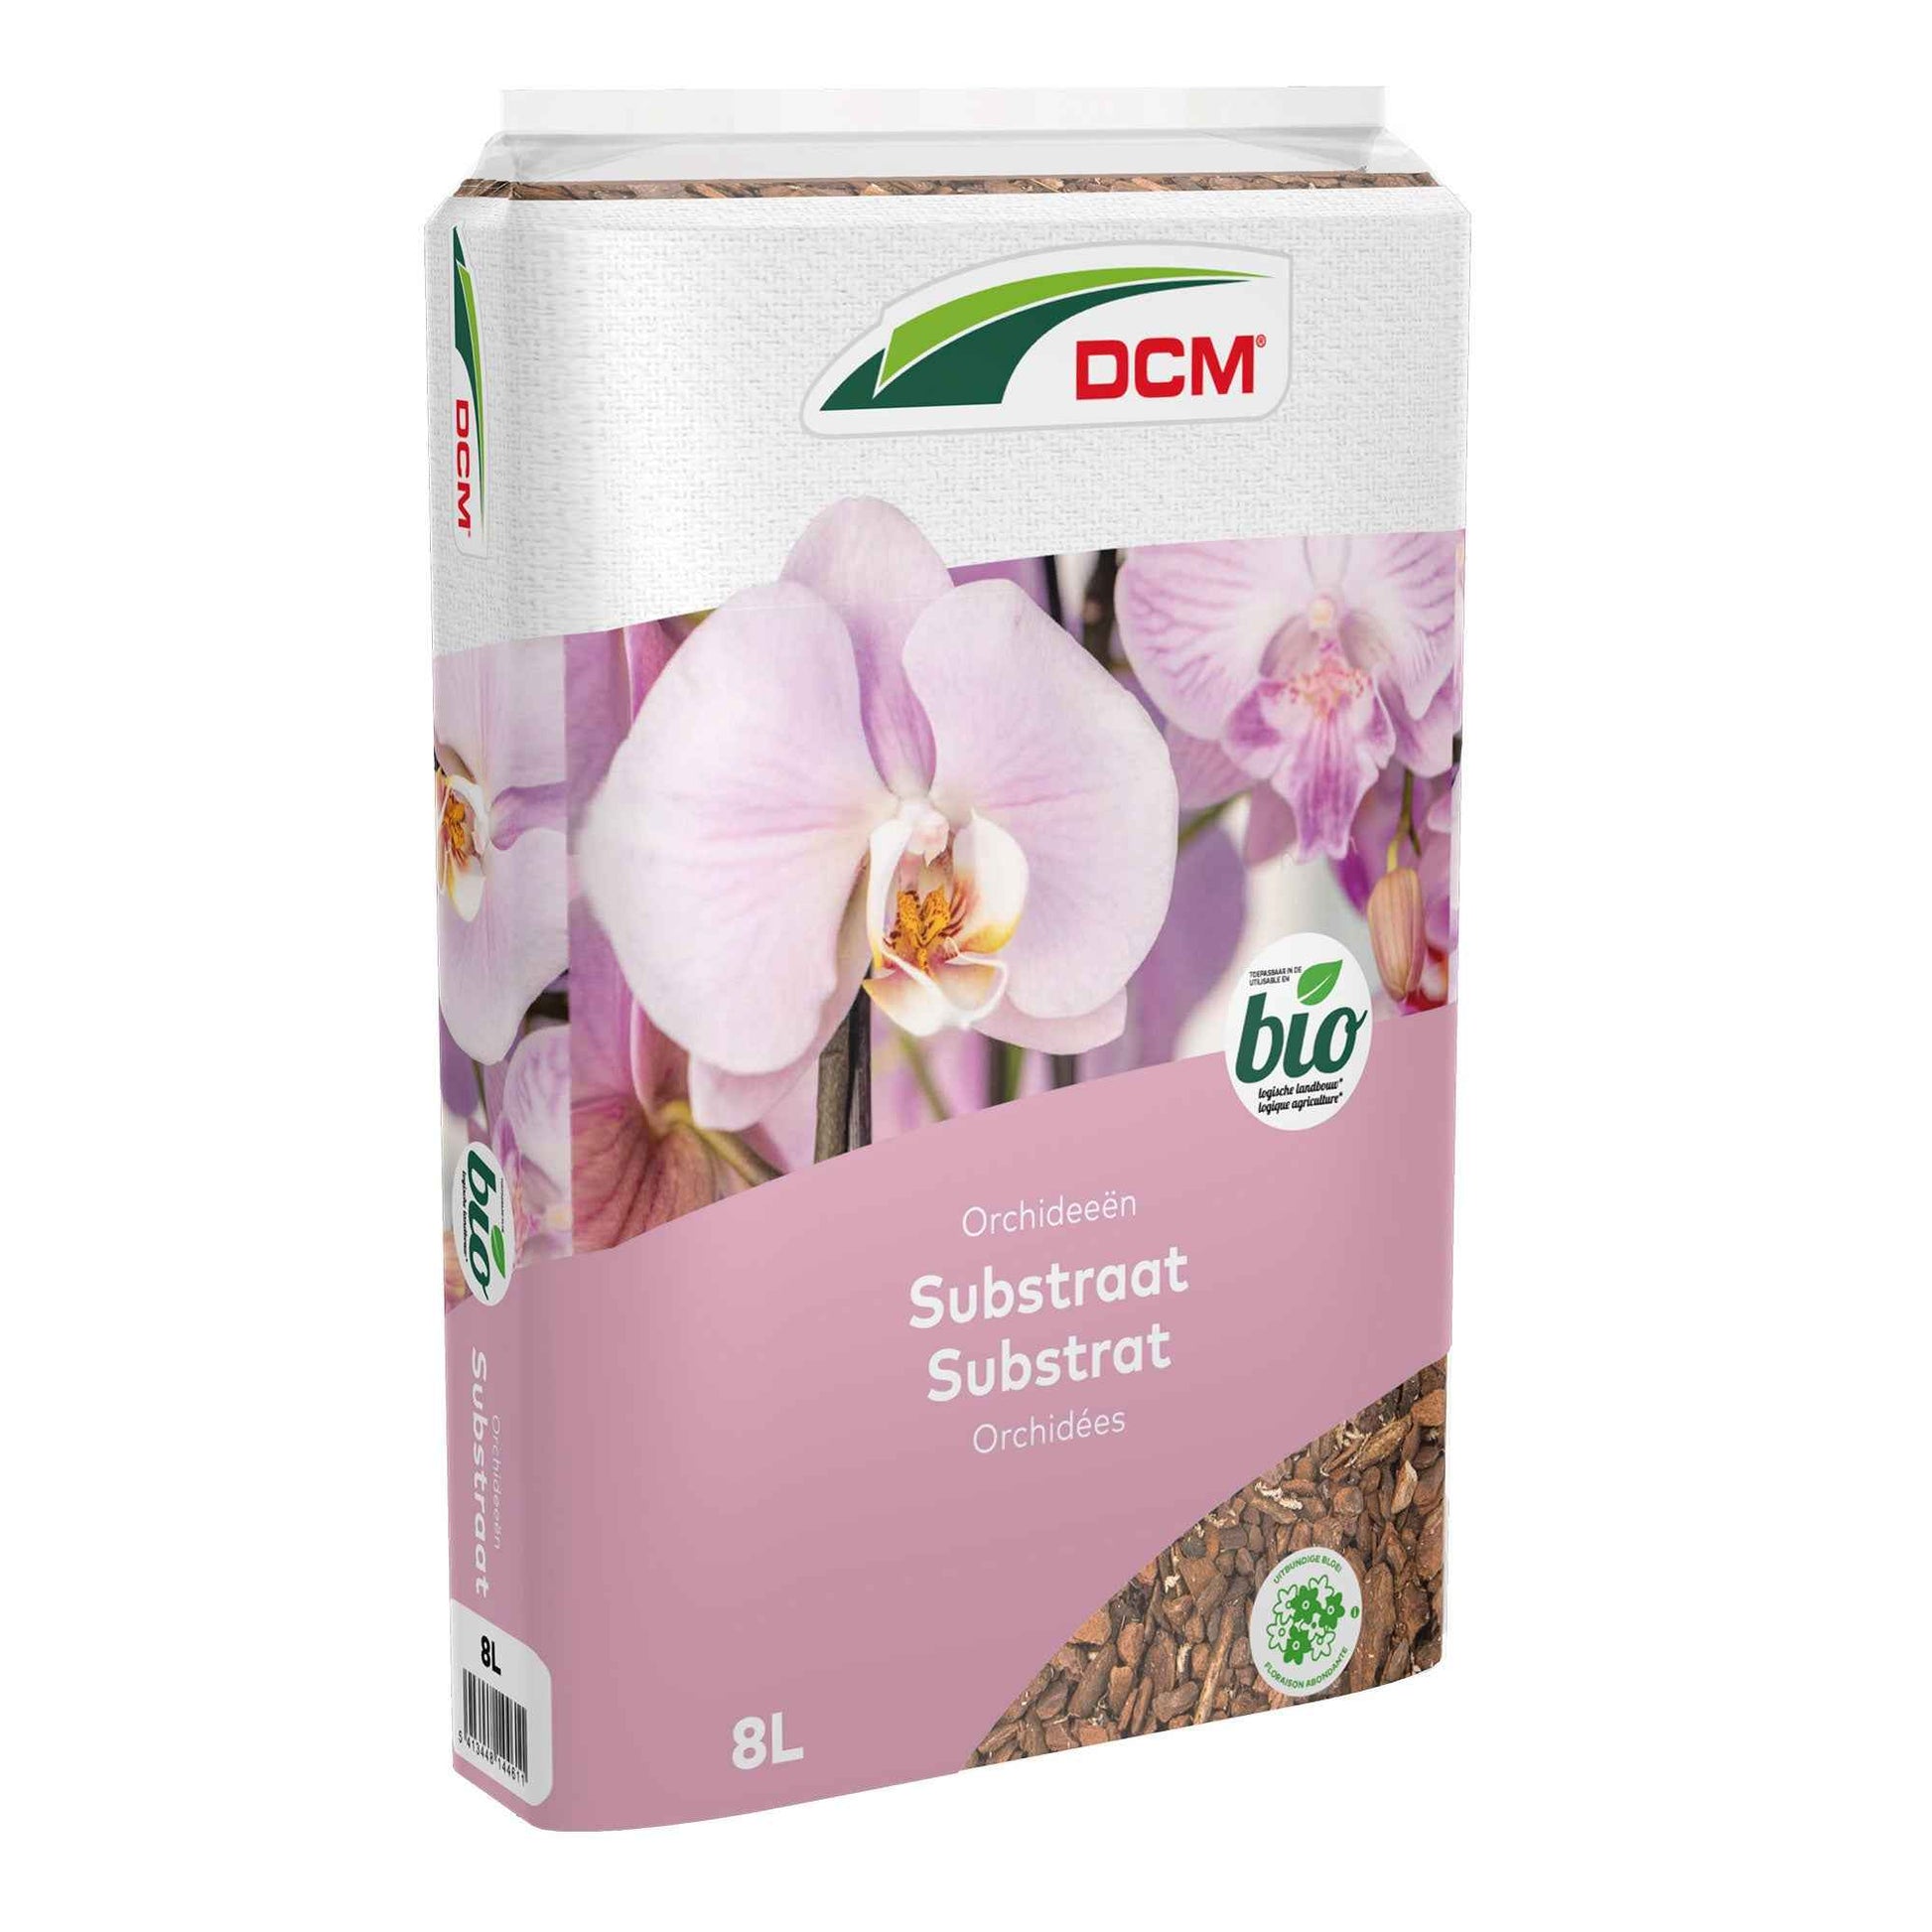 Orchideeënsubstraat - Biologisch 8 liter - DCM - Biologische plantenvoeding